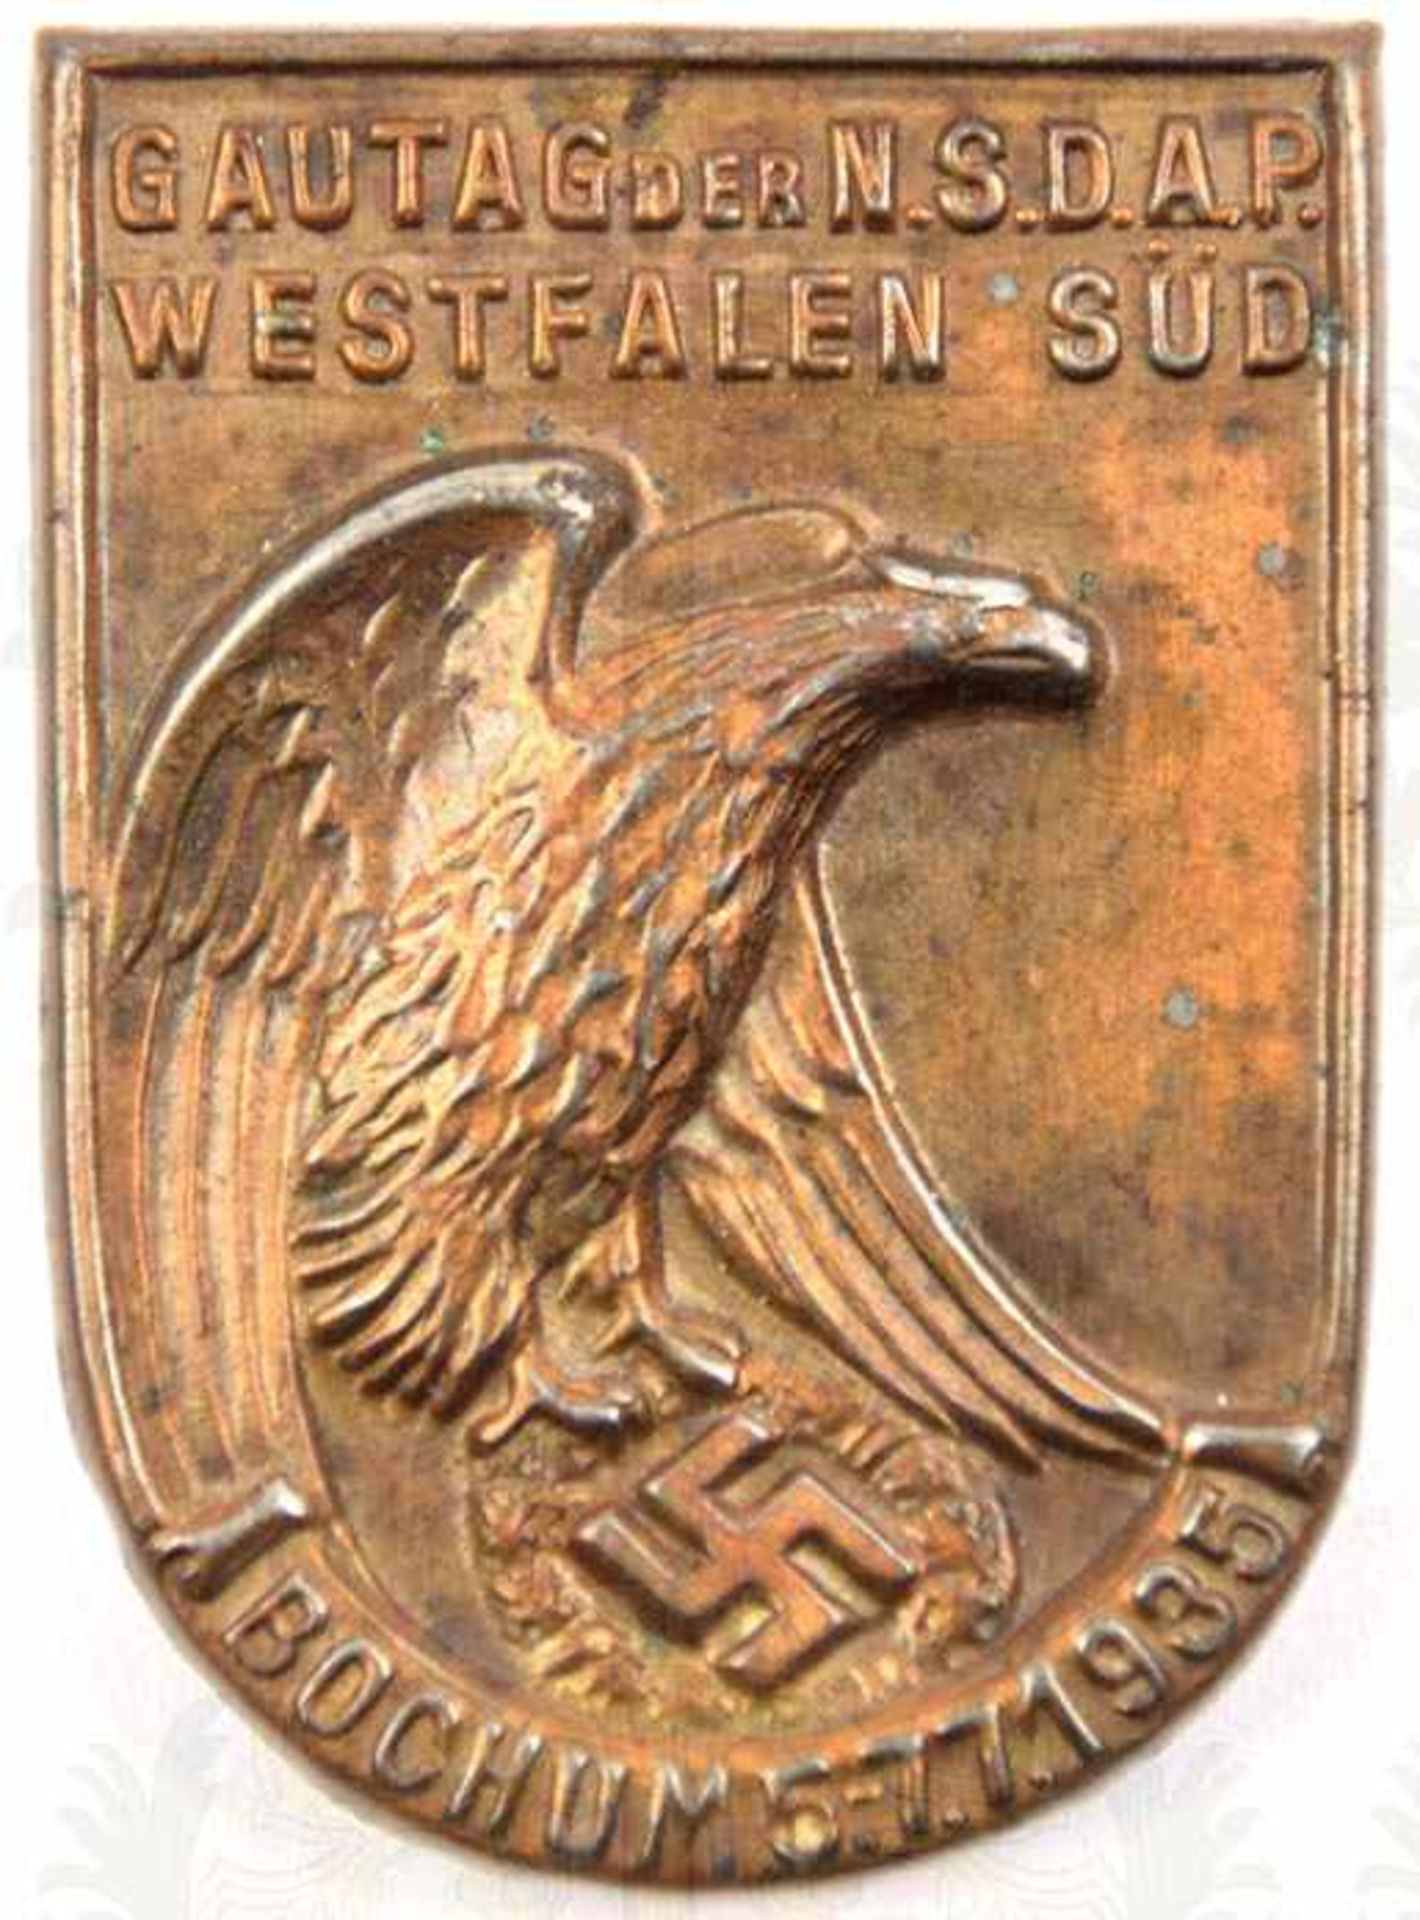 GAUTAG DER NSDAP WESTFALEN-SÜD, Bochum, 1935, Buntmetall, hohl geprägt, gedunkelt